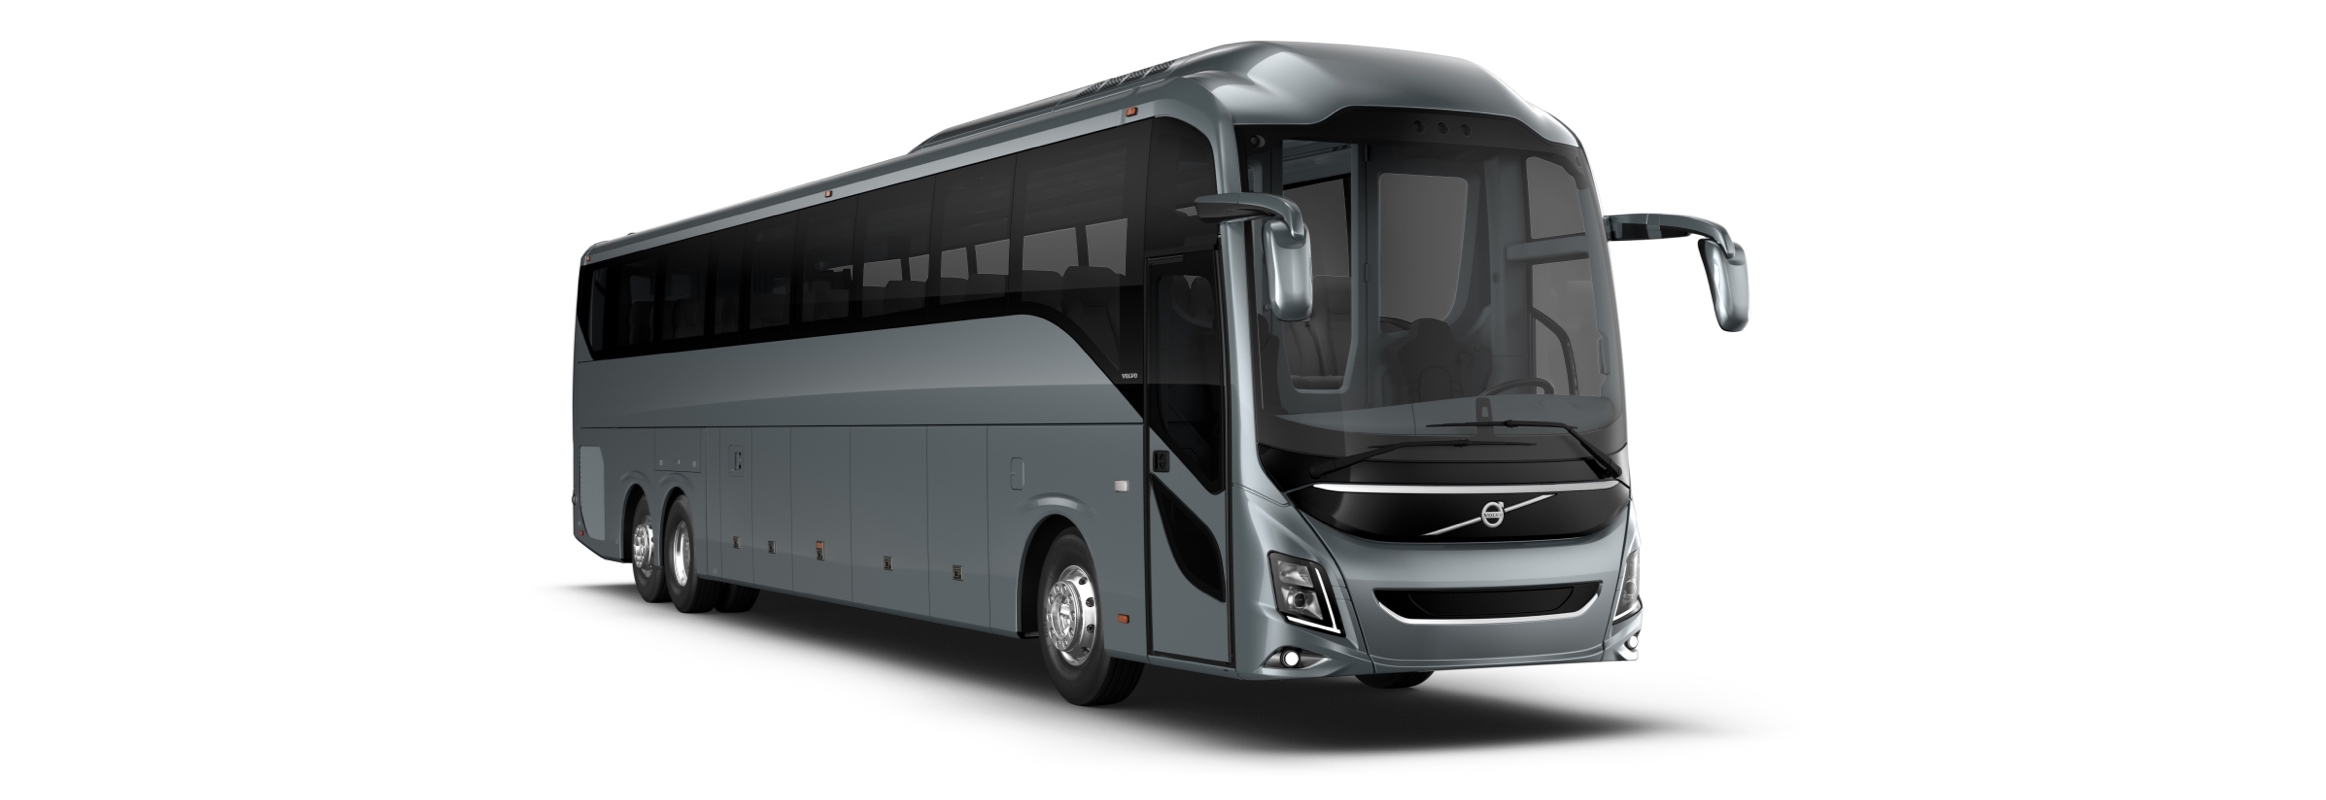 2326px x 800px - Volvo 9800 Especificaciones | Volvo Buses